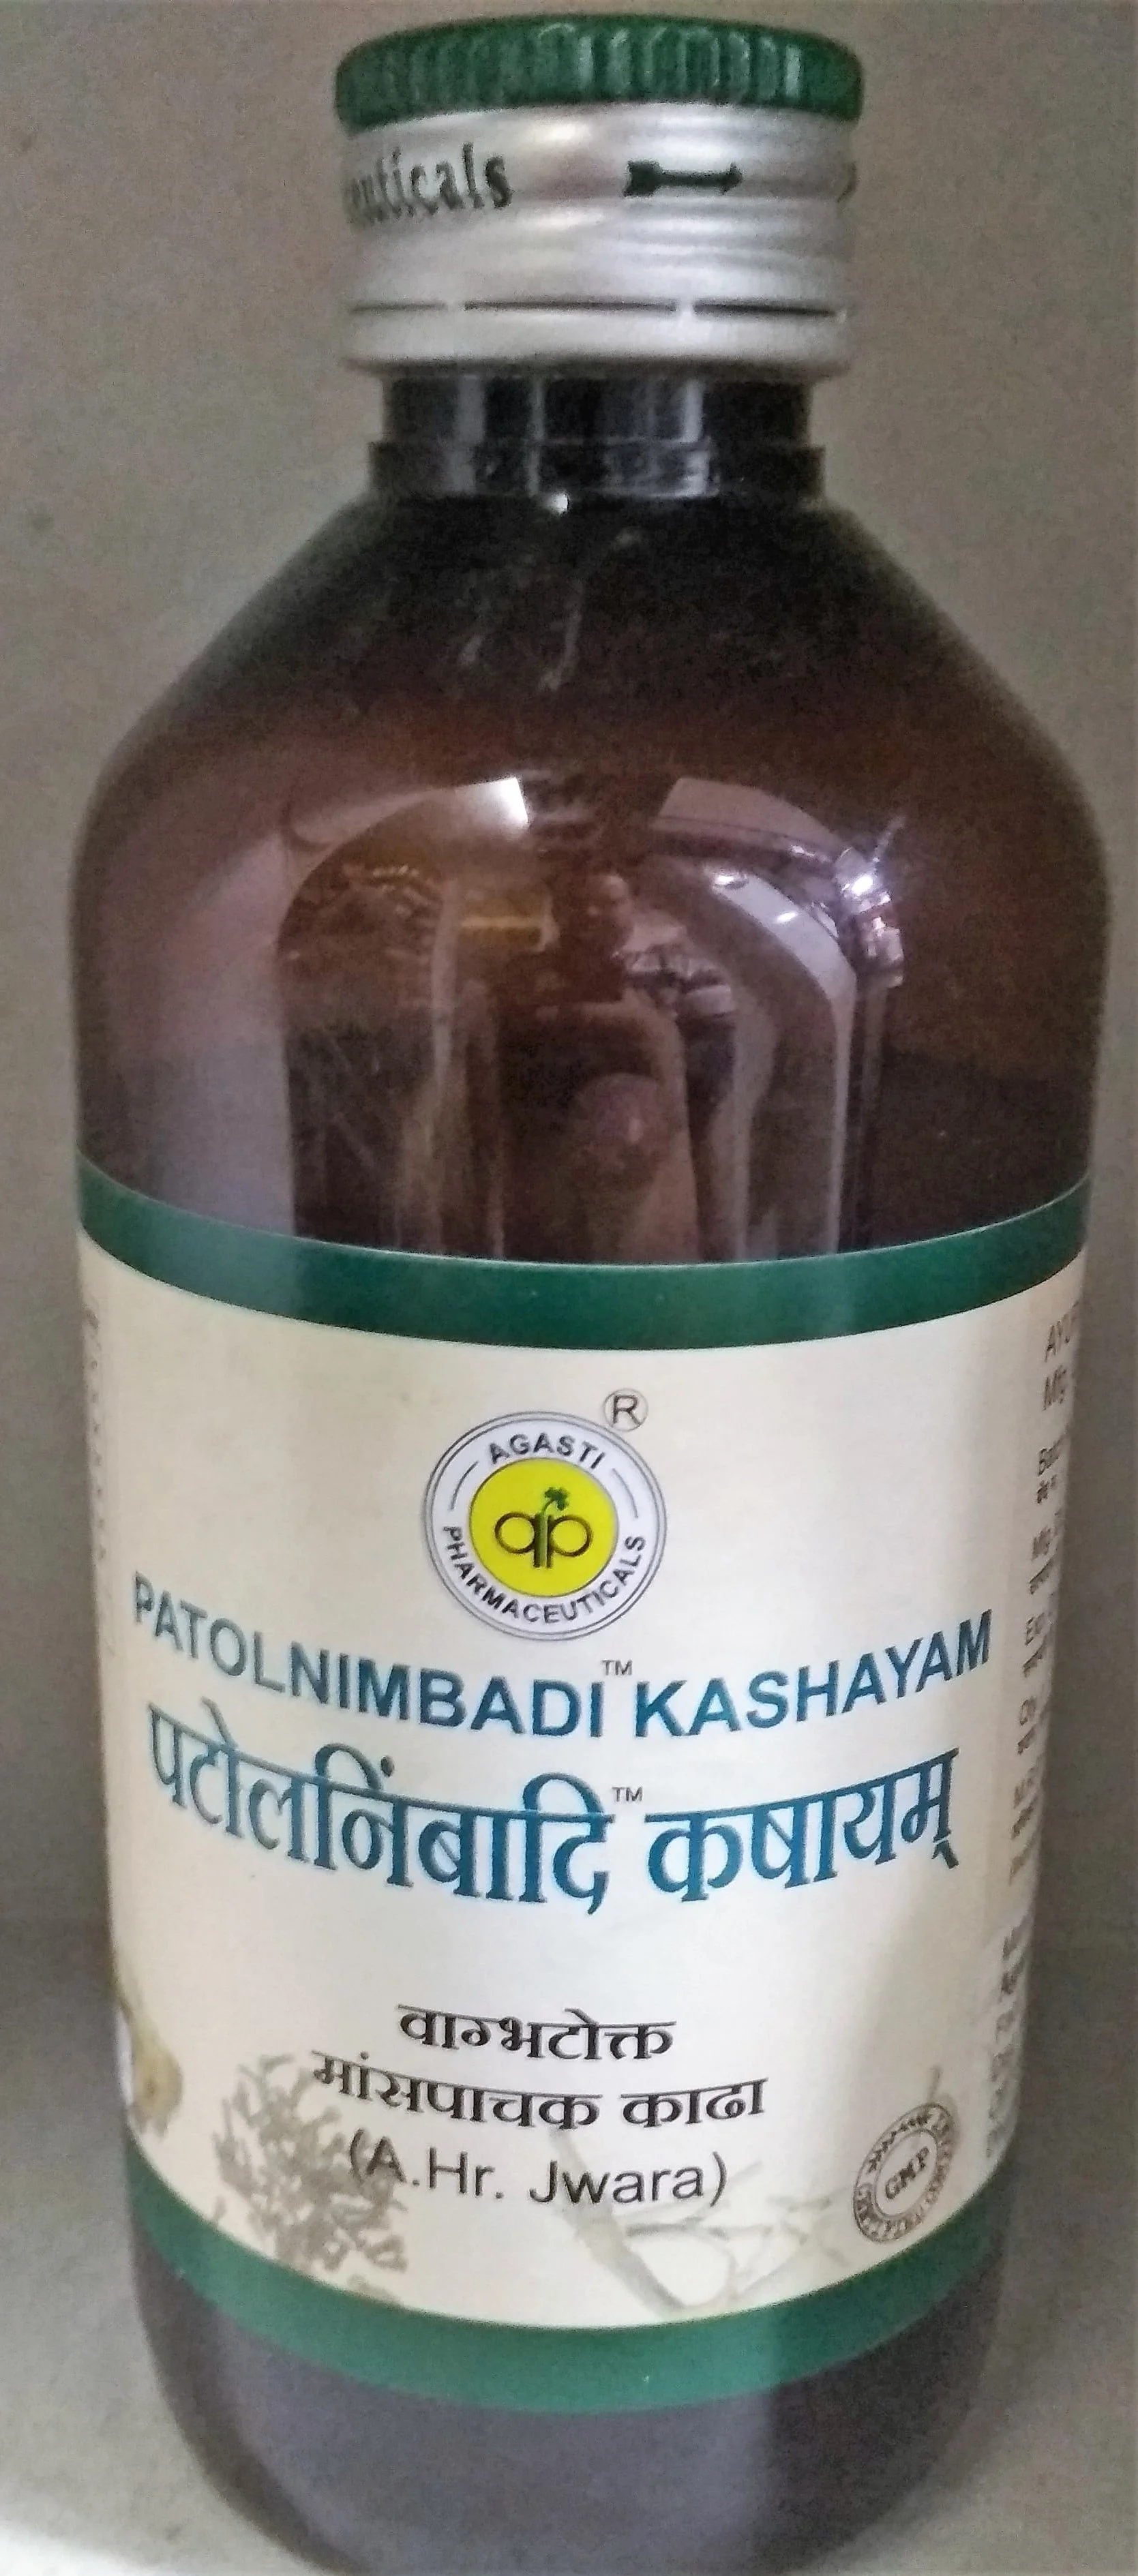 patolnimbadi kashayam 450 ml upto 15% off agasti pharmaceuticals